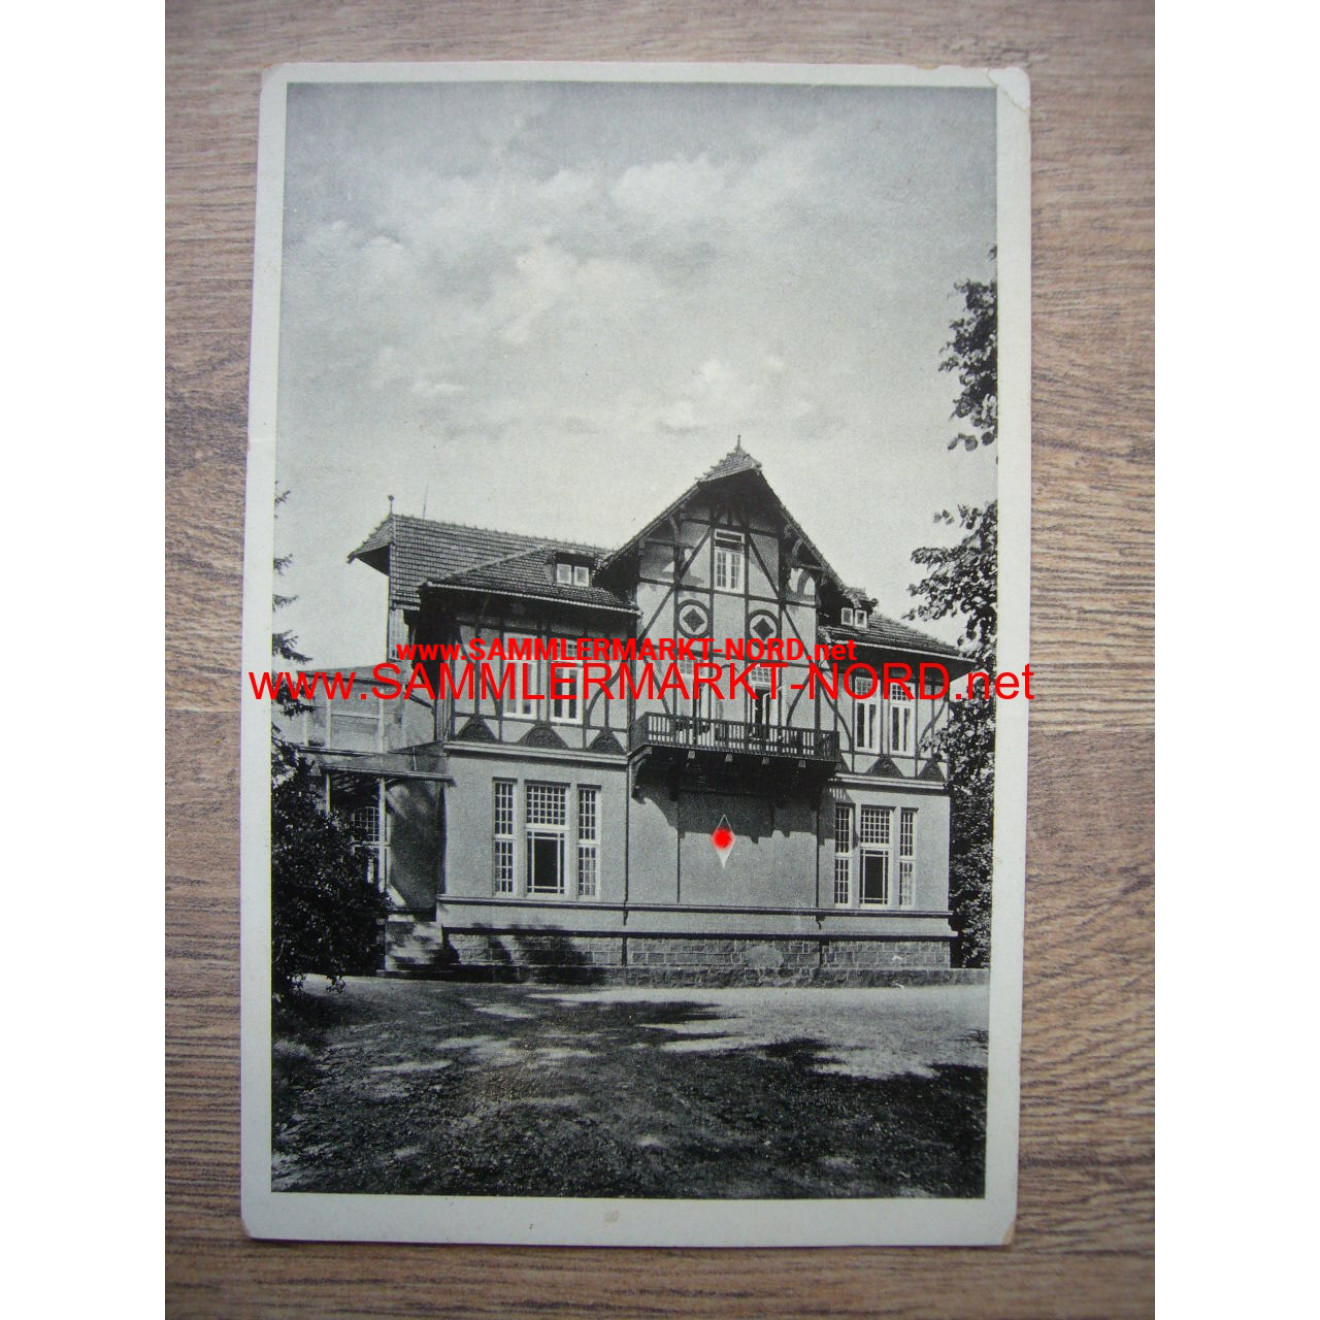 HJ Gebietsführerschule Nordmark (Malente-Gremsmühlen) - Postkart